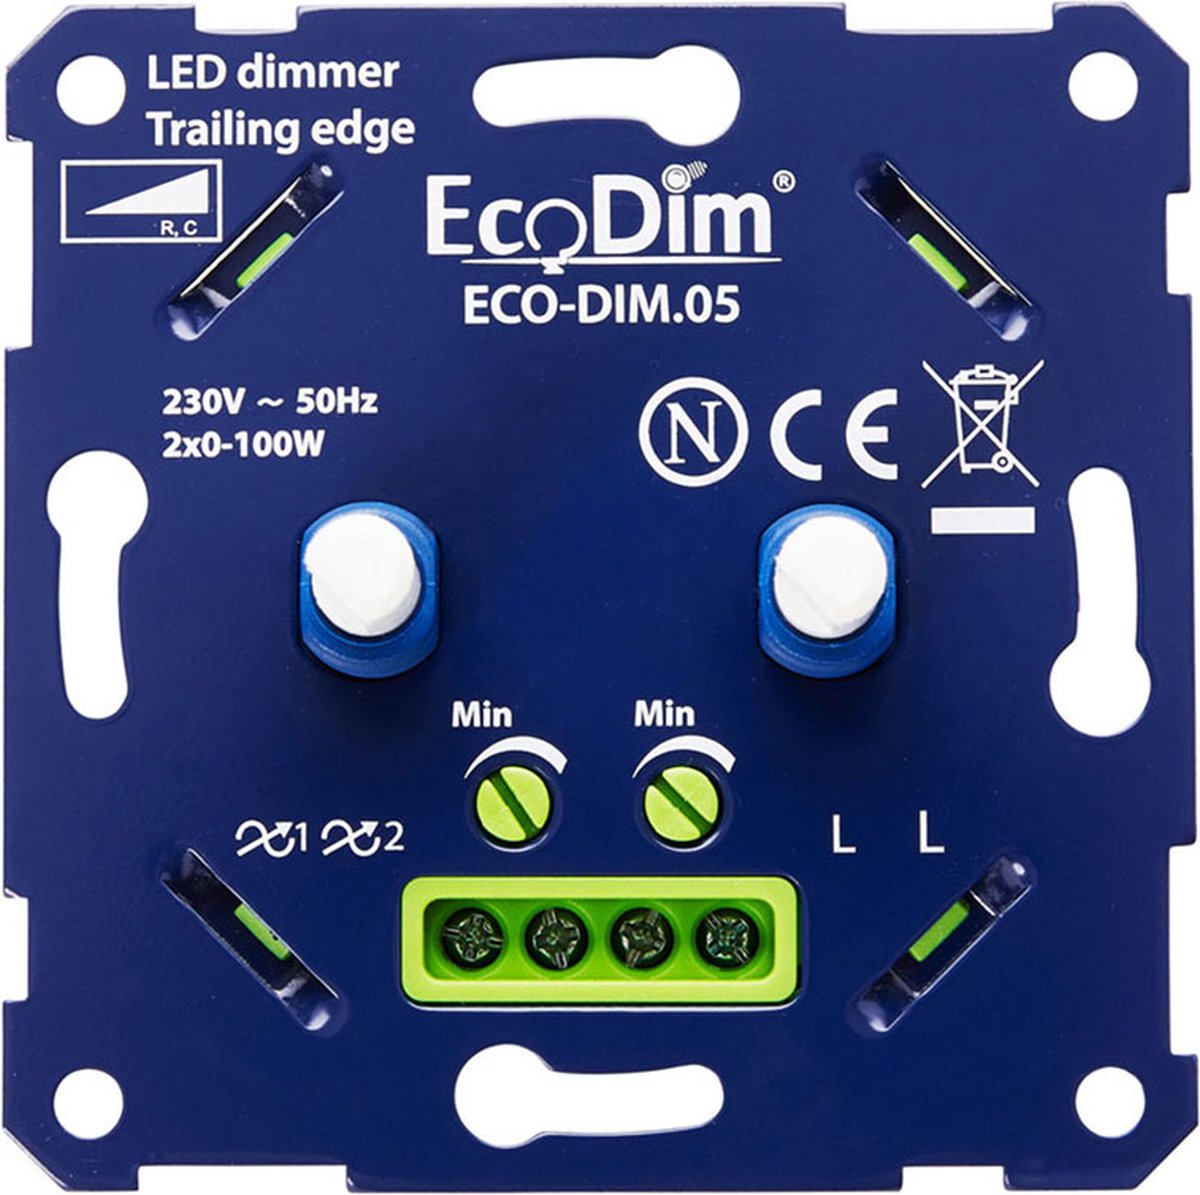 EcoDim duo led dimmer, ECO-DIM.05, druk/draai, kleine inbouwdiepte, 2x 100W LED, bijpassend afdekmateriaal verkrijgbaar